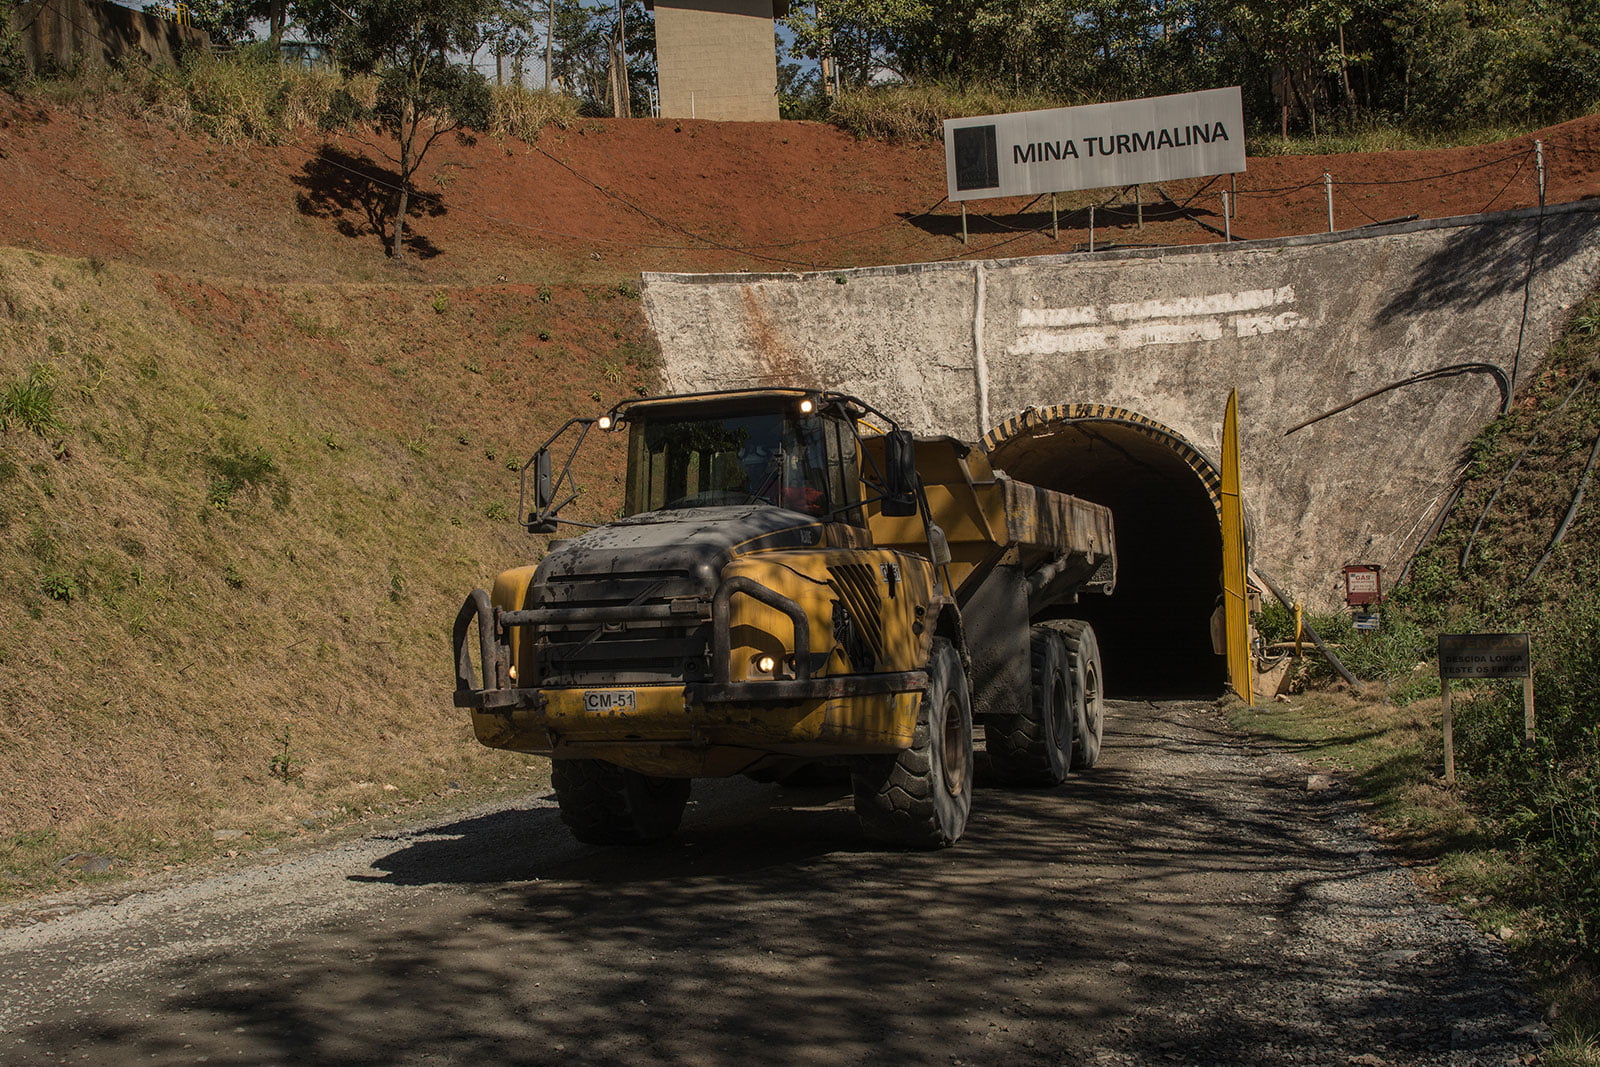 Foto: Galeria de Imagens da Jaguar Mining